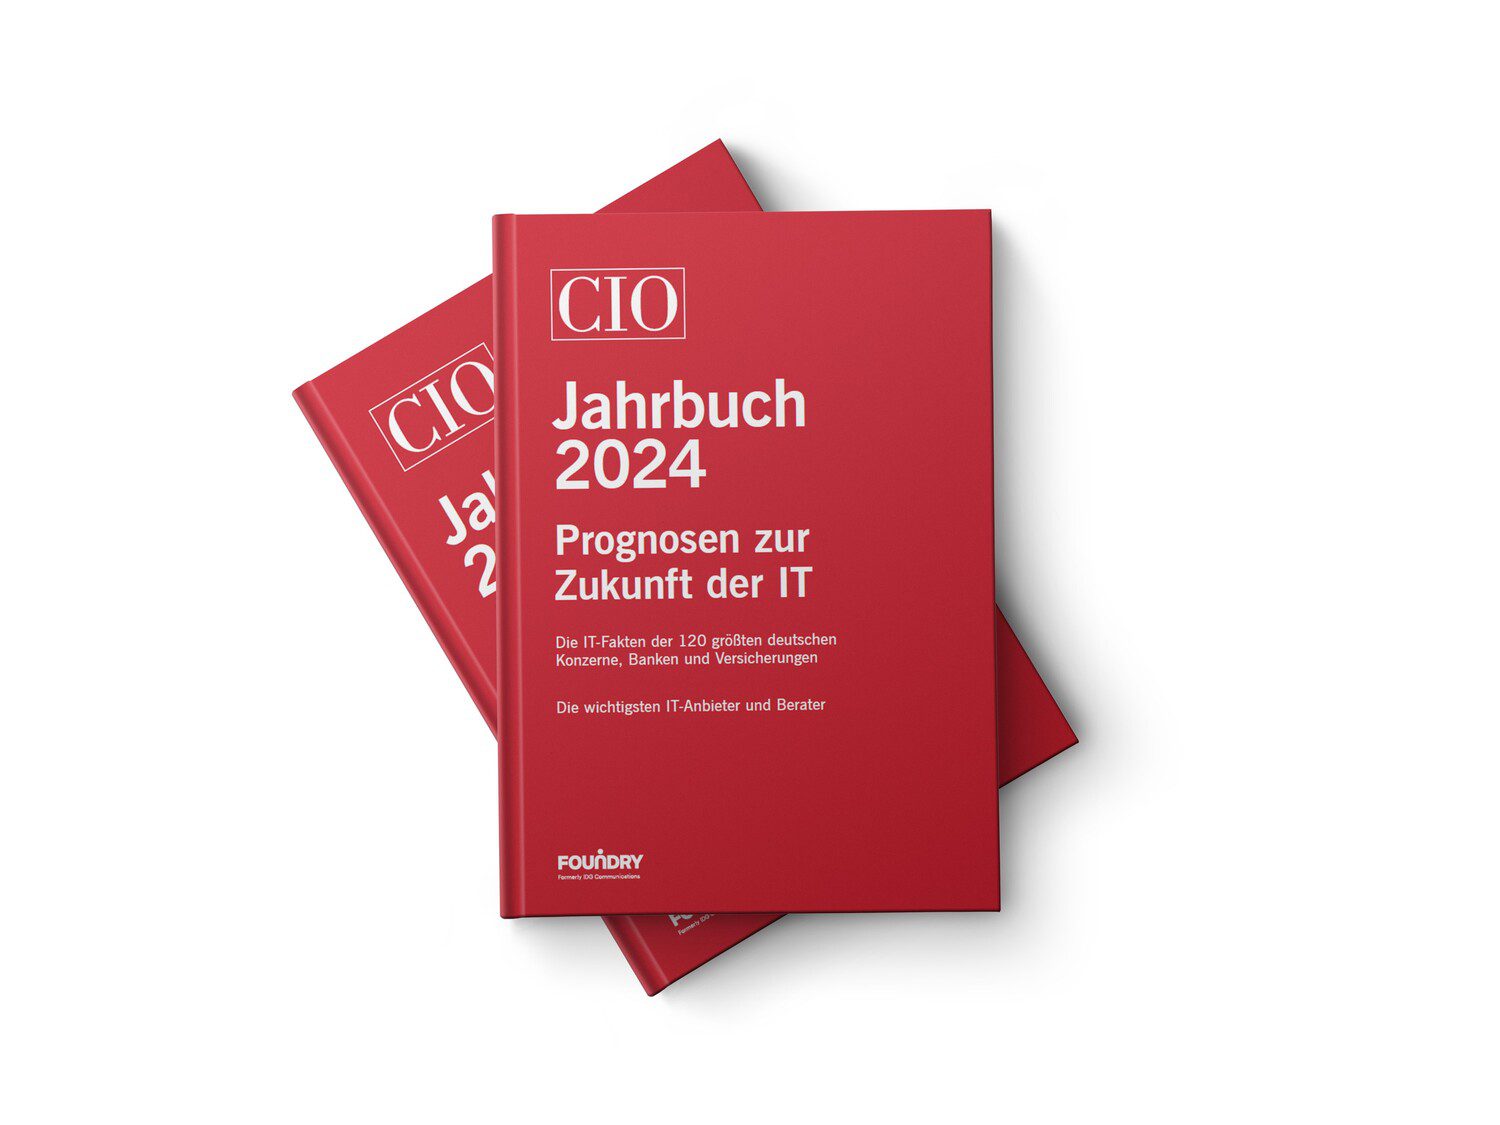 CIO Jahrbuch 2024